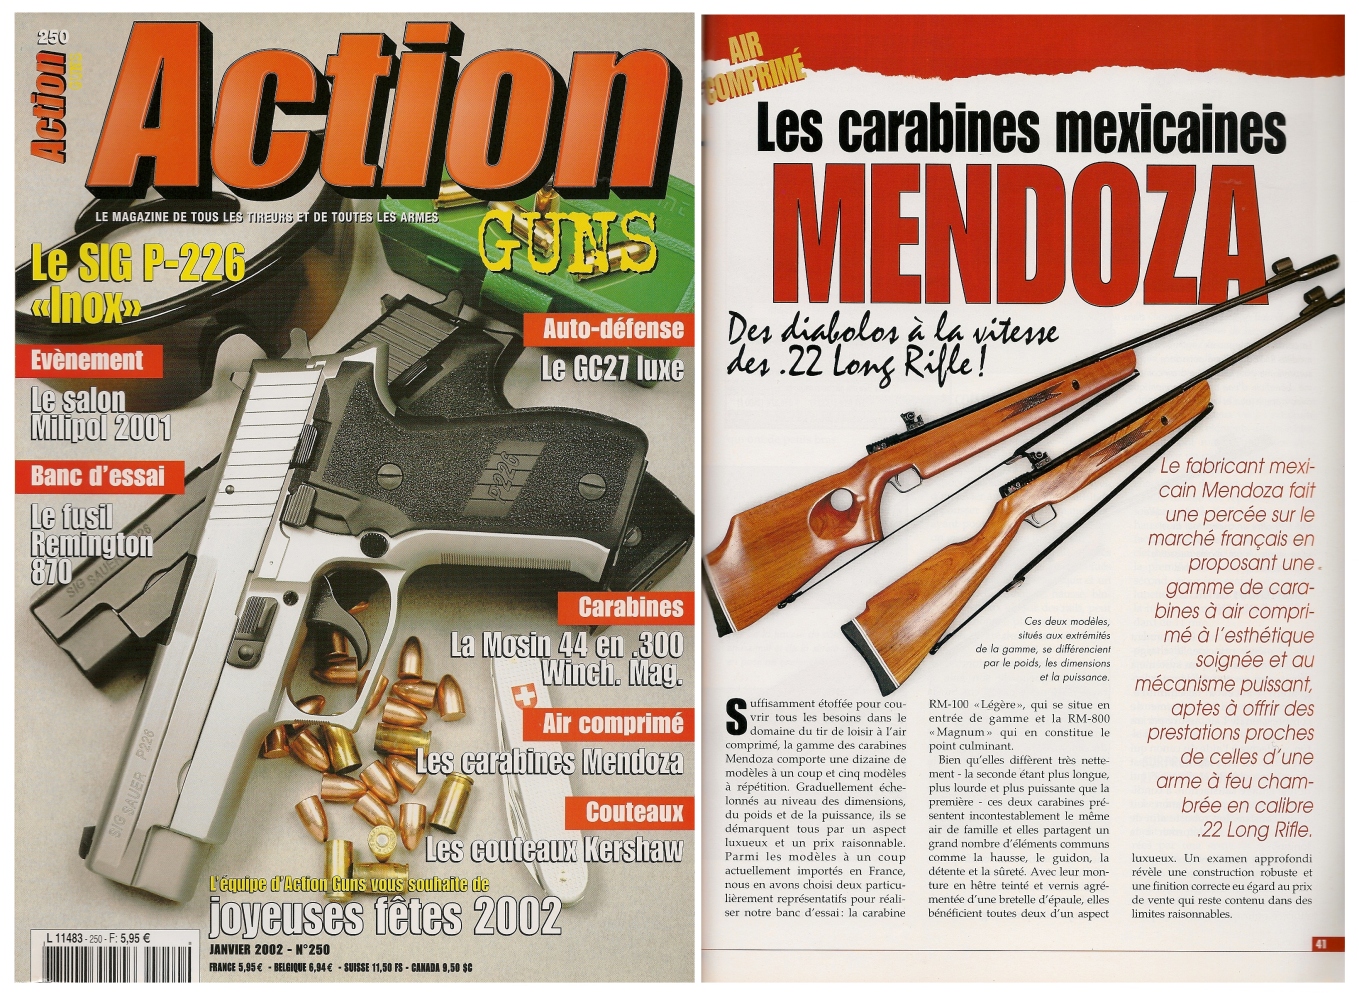 Le banc d’essai des carabines mexicaines à air comprimé Mendoza a été publié sur 5 pages dans le magazine Action Guns n°250 (janvier 2002). 